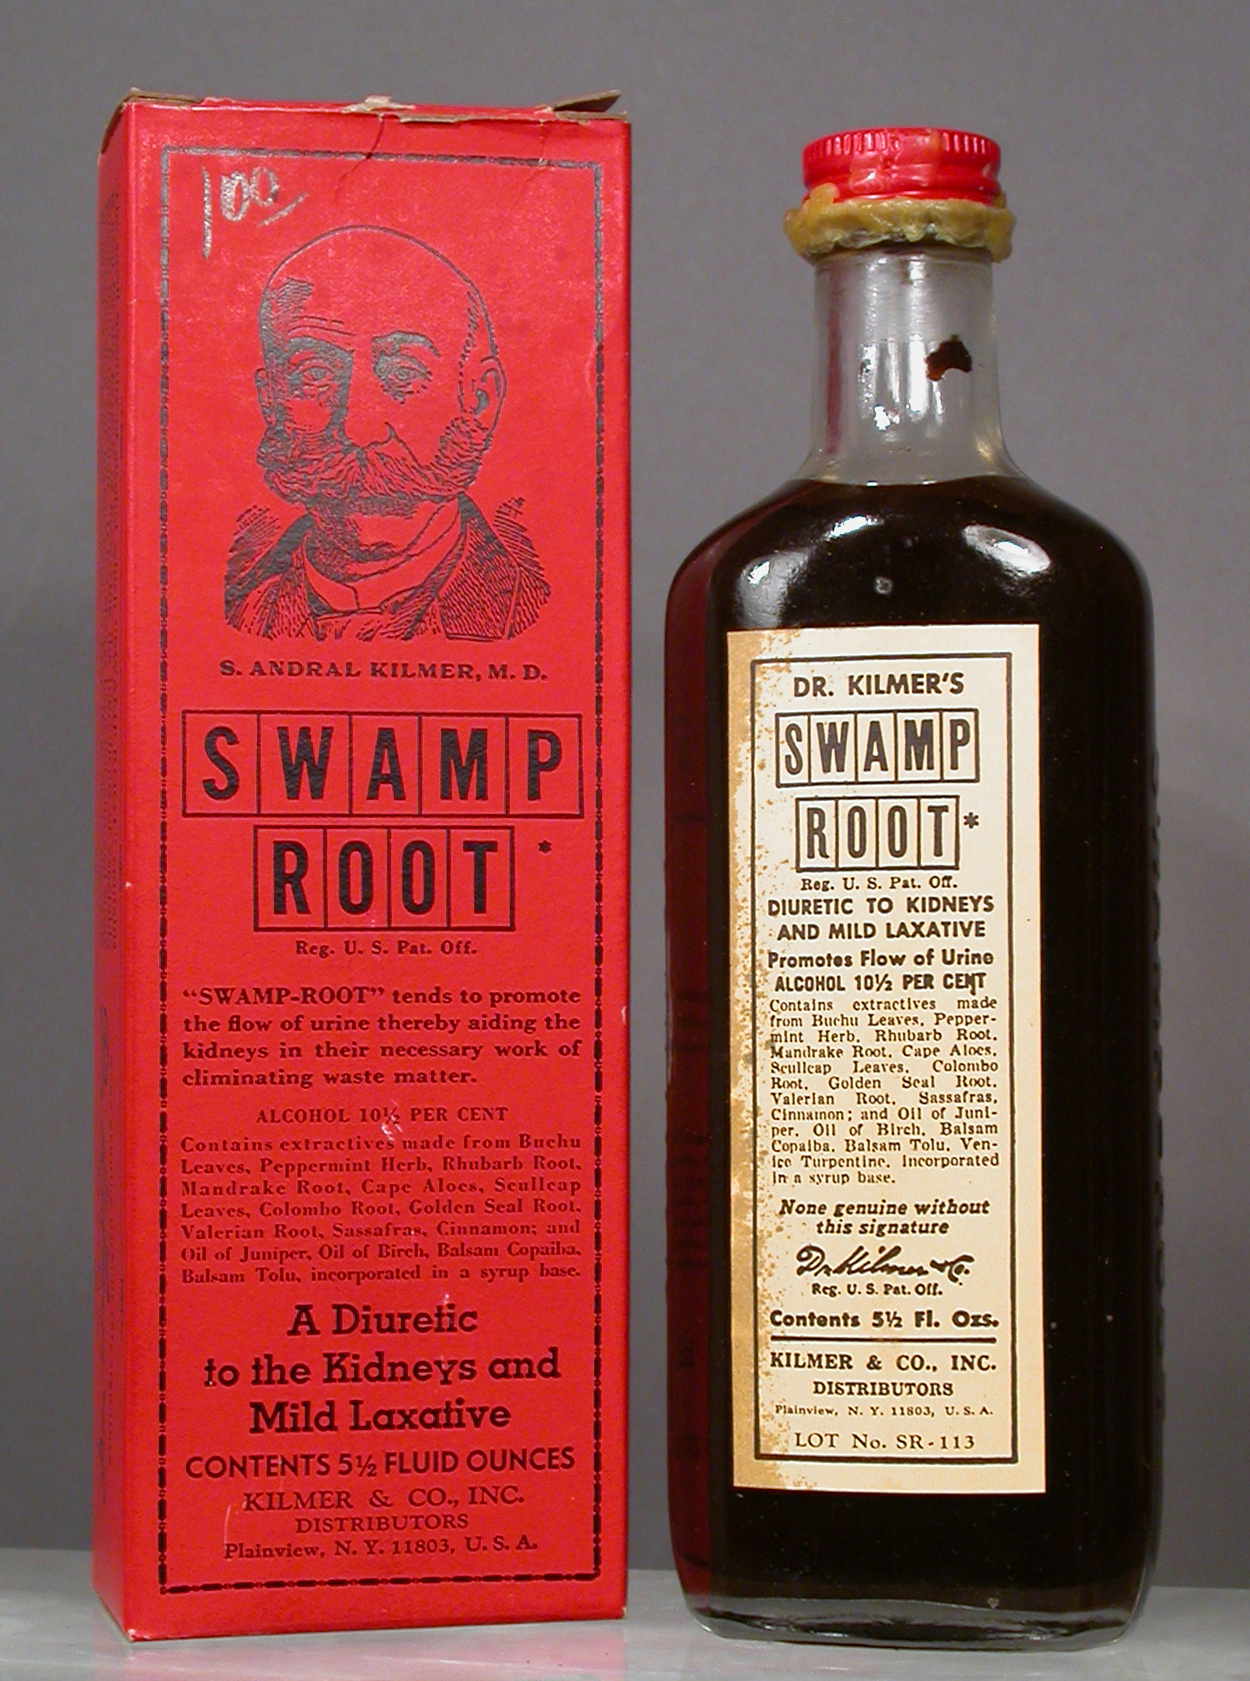 Dr. Kilmer's Swamp Root